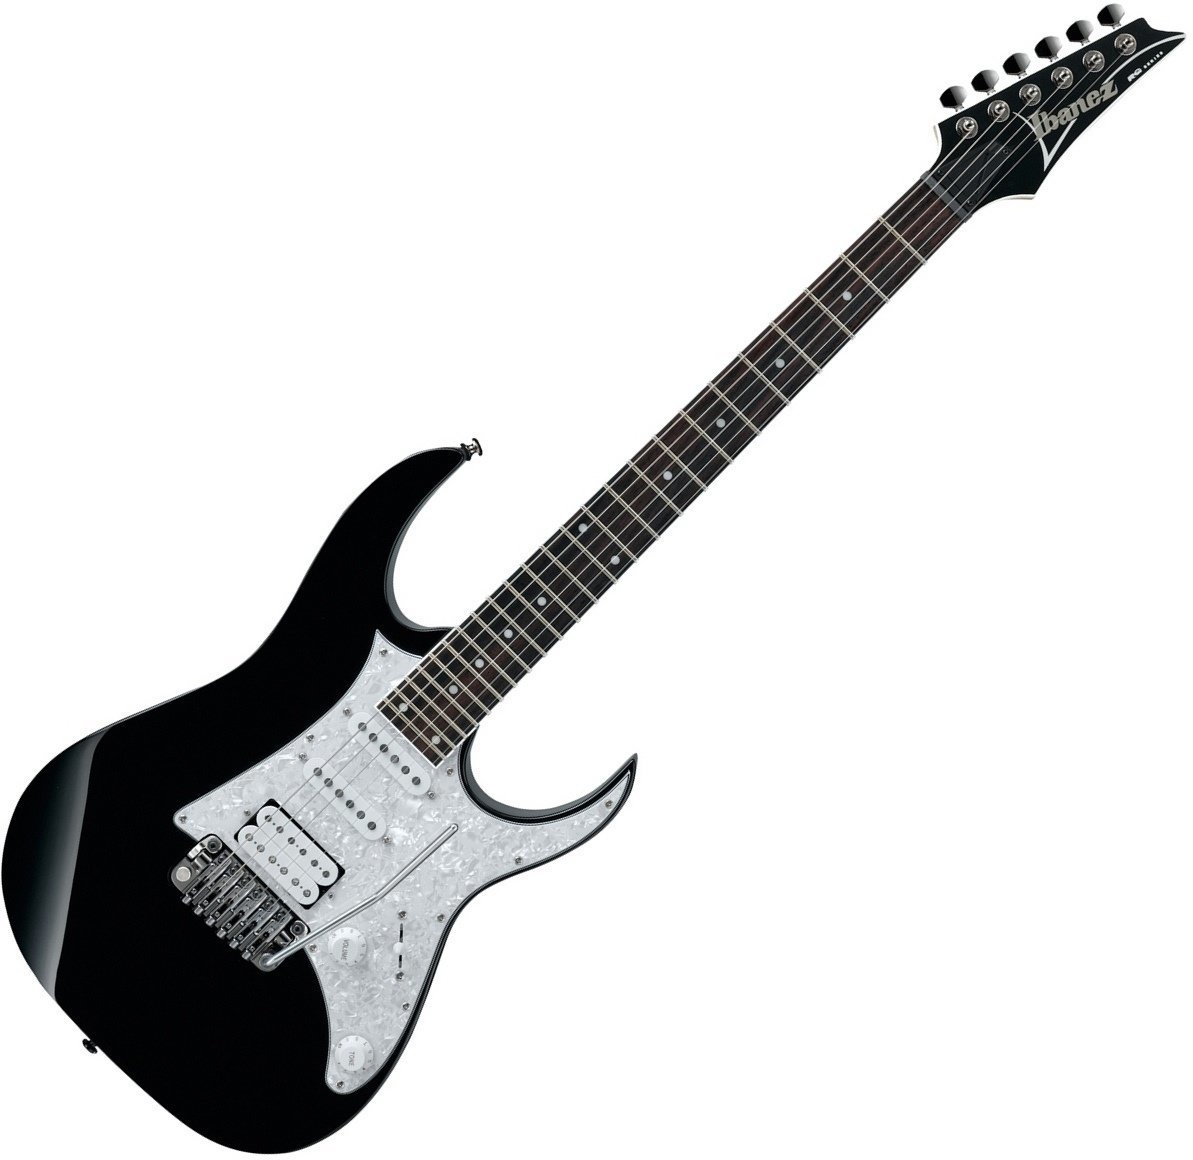 Electric guitar Ibanez RG 440V Black